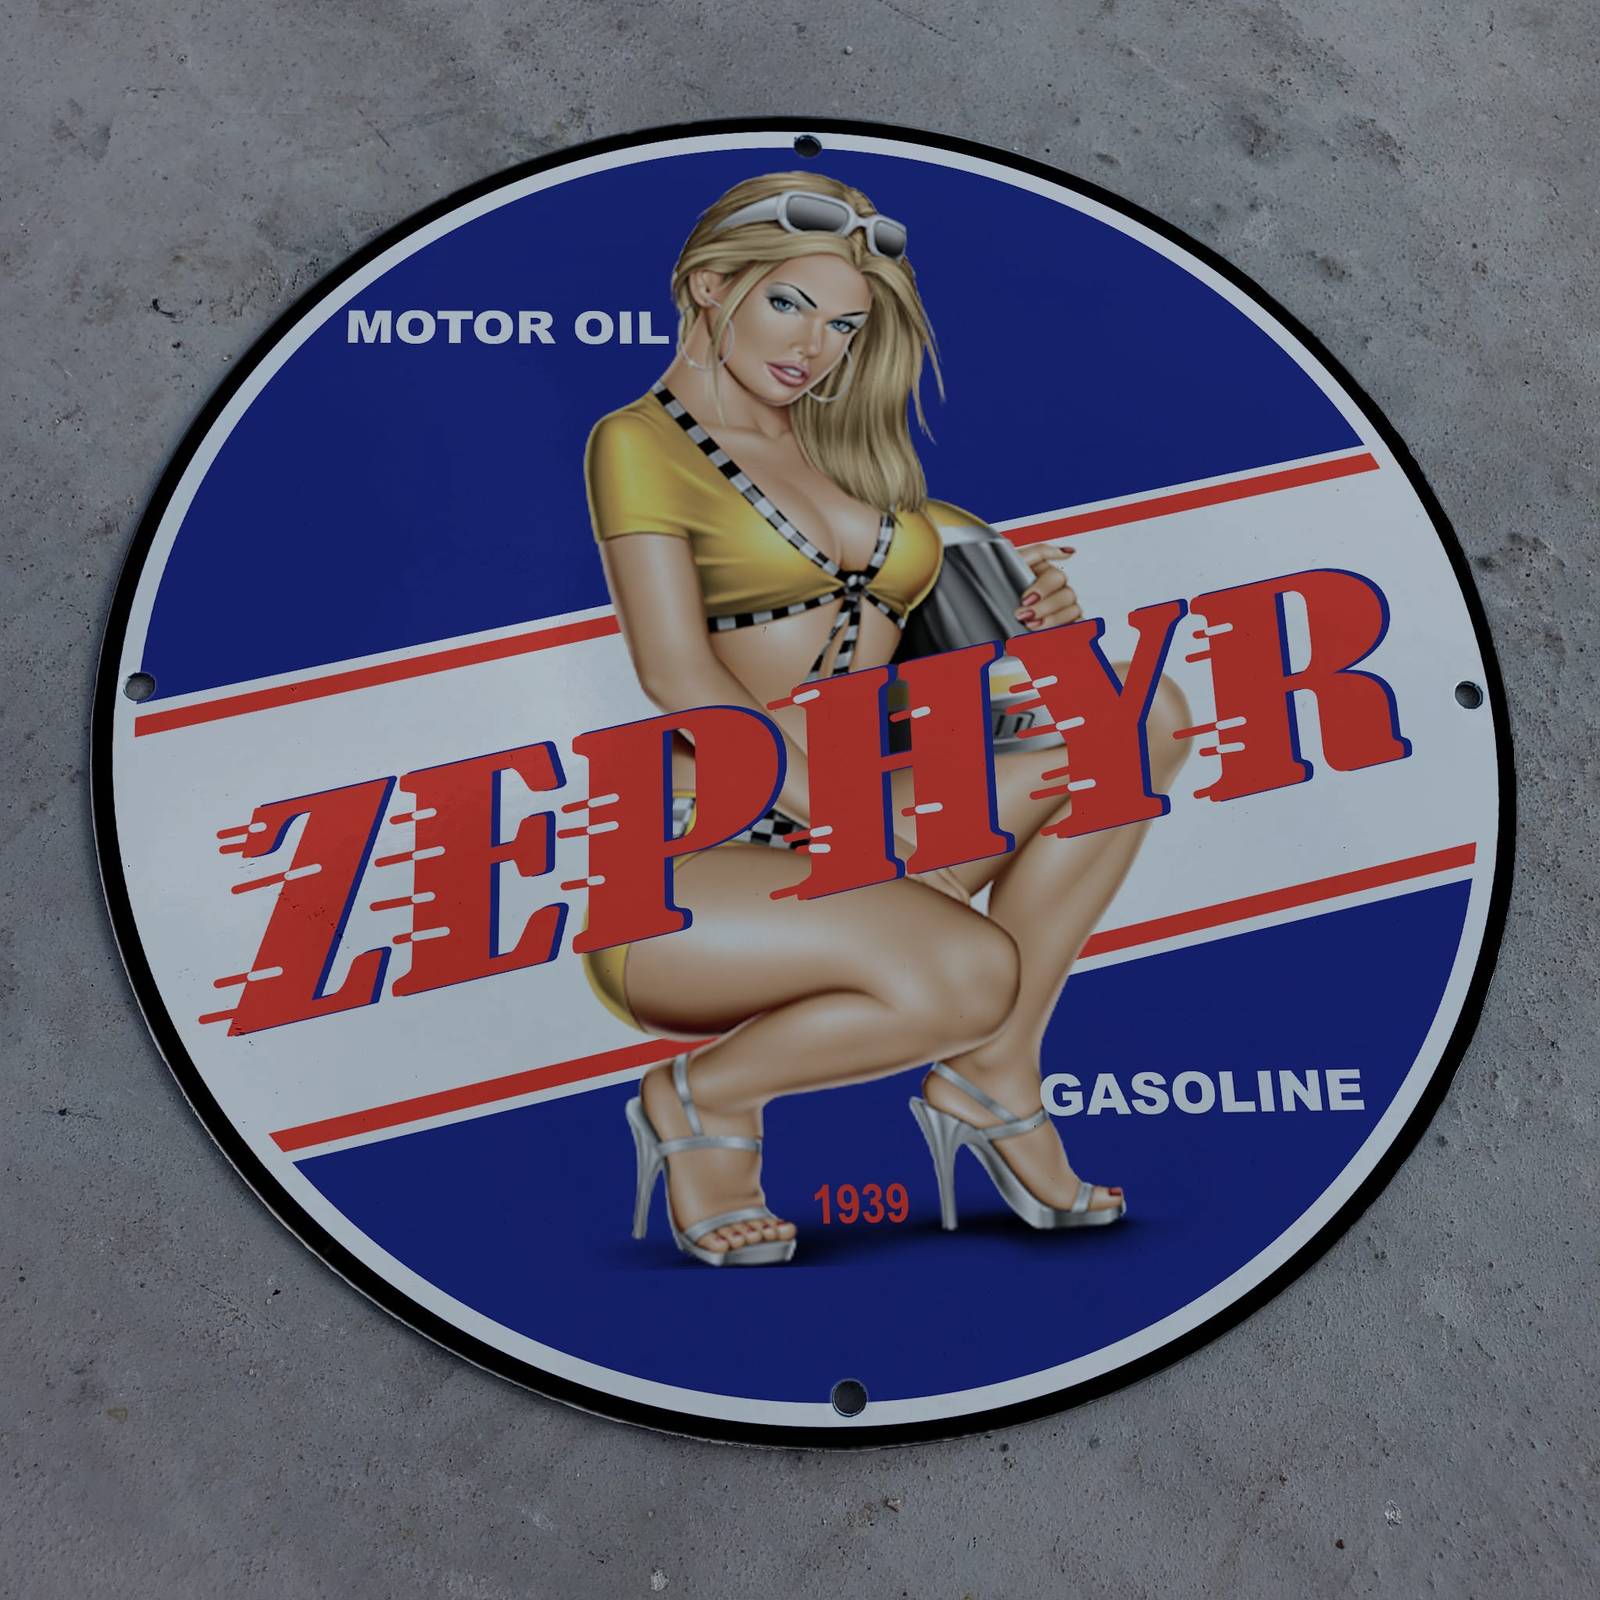 Primary image for Vintage 1939 Zephyr Motor Oil Gasoline Fuel Porcelain Gas & Oil Pump Sign